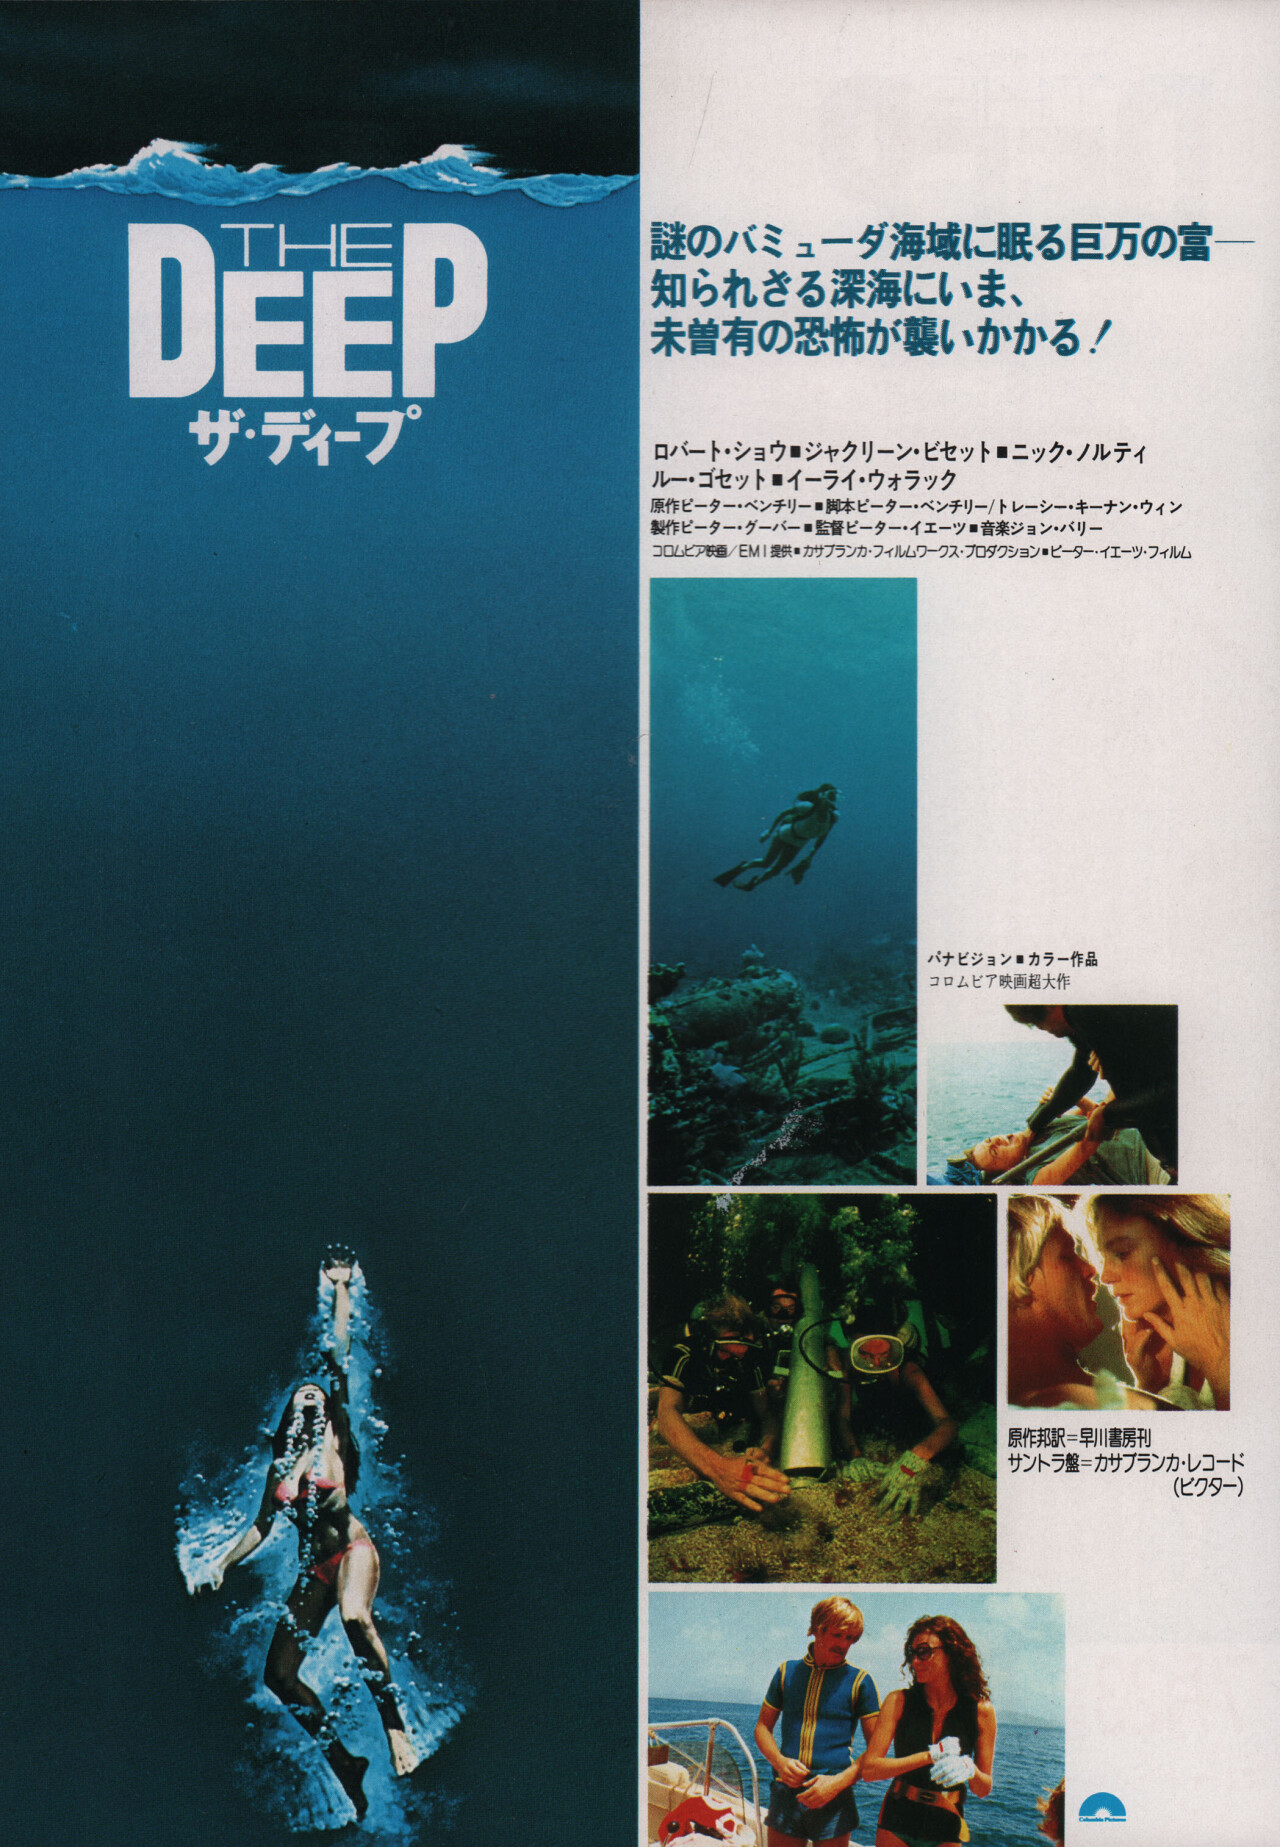 Бездна (The Deep, 1977), режиссёр Питер Йейтс, японский постер к фильму (ужасы, 1977 год)